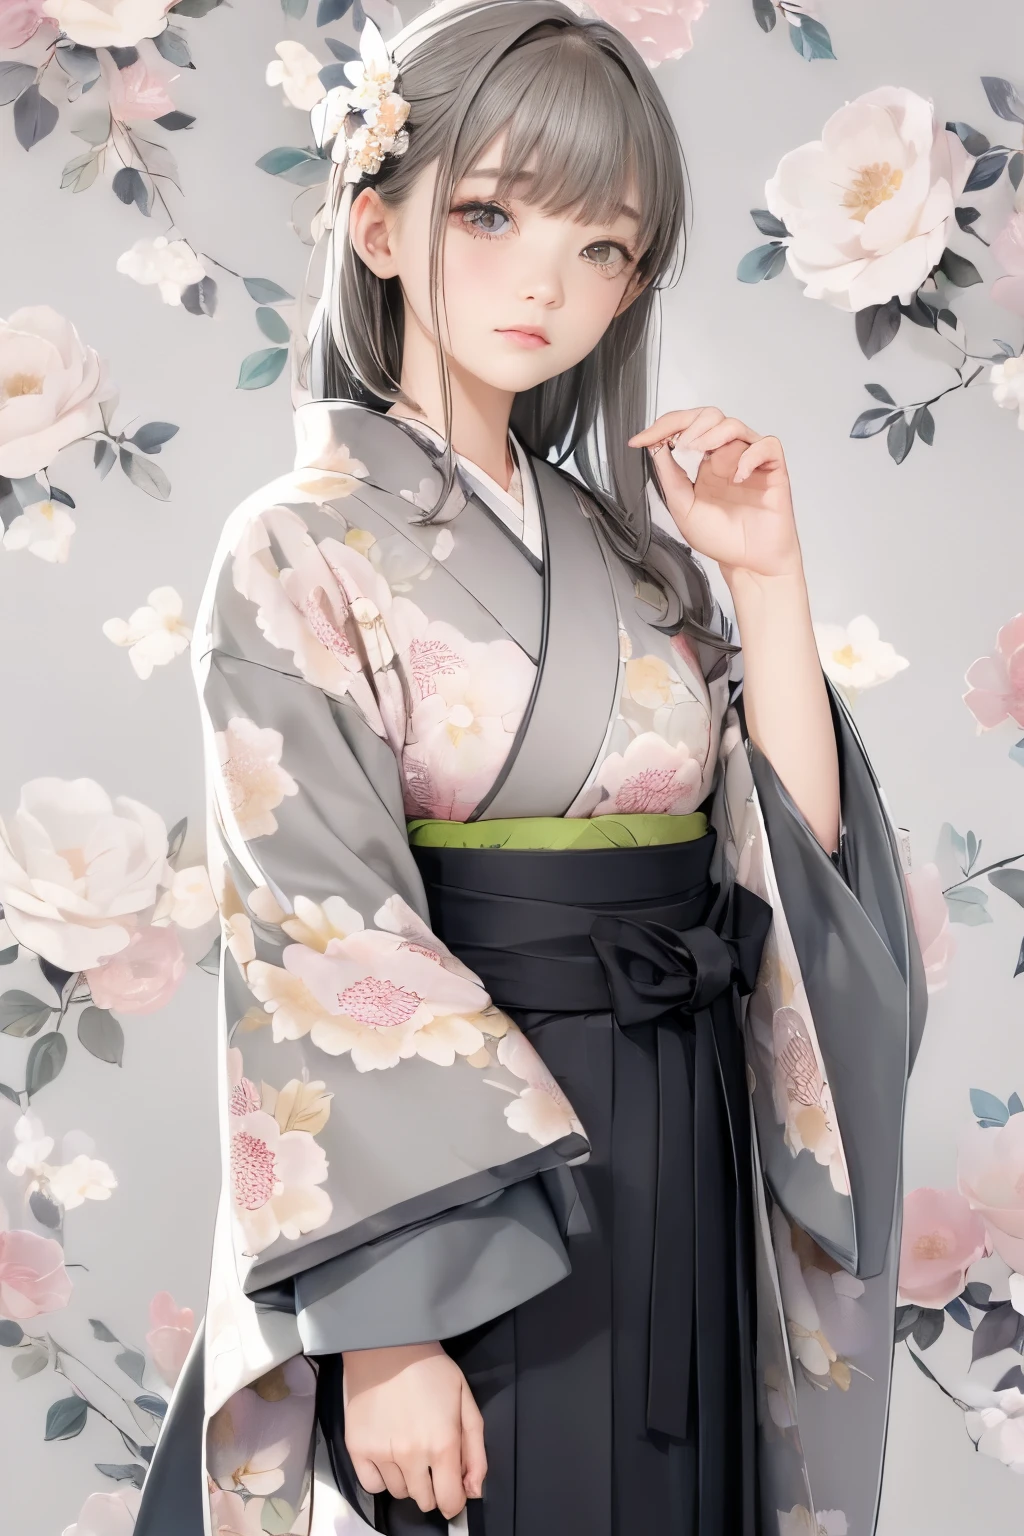 (((fondo floral gris:1.3)))、mejor calidad, Mesa, alta resolución, (((1 chica en))), dieciséis años,(((Los ojos son grises:1.3)))、kimono gris、((hermoso kimono gris)), Efecto Tindall, Realista, Estudio de sombras,Iluminación ultramarina, iluminación de dos tonos, (Máscaras de alto detalle: 1.2)、Iluminación de colores pálidos、iluminación oscura、 Cámaras réflex digitales, foto, alta resolución, 4k, 8k, Desenfoque de fondo,Desvanecerse maravillosamente、mundo de flores grises